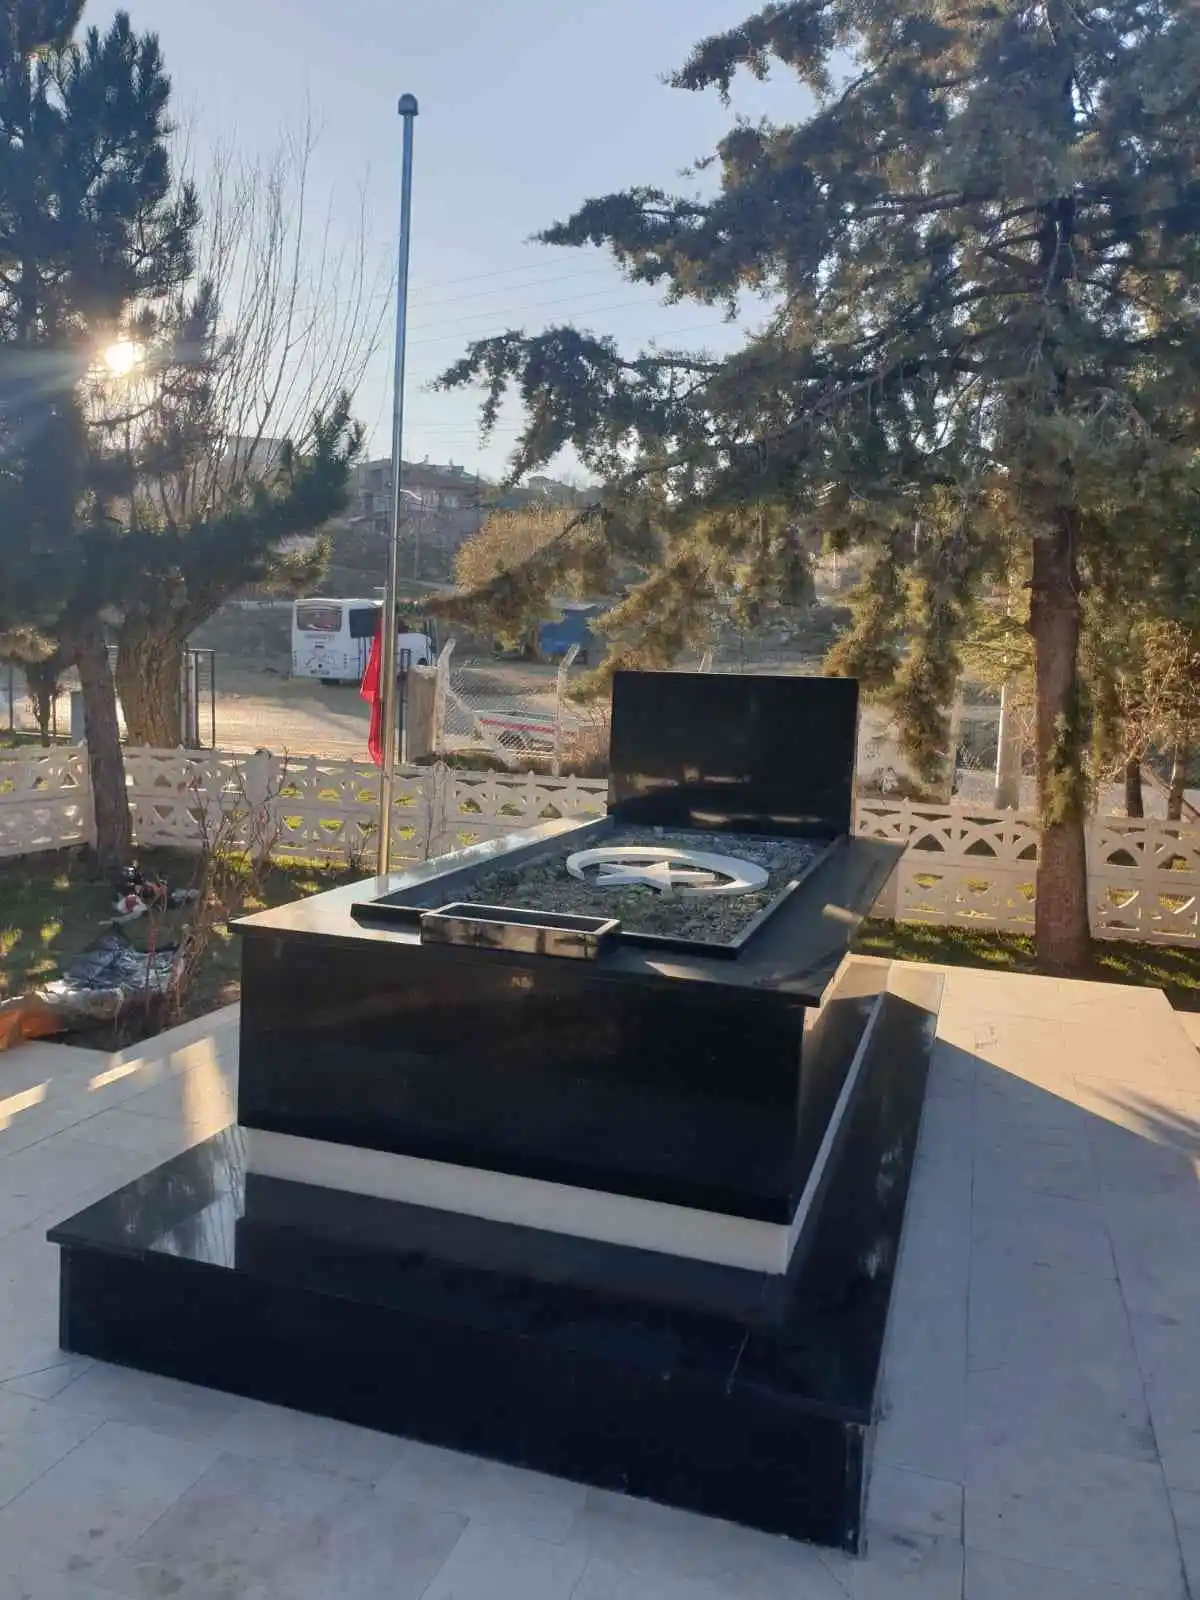 Kurtuluş Savaşı şehidi Çeçeli Kara Murat'ın mezarı yenilendi
